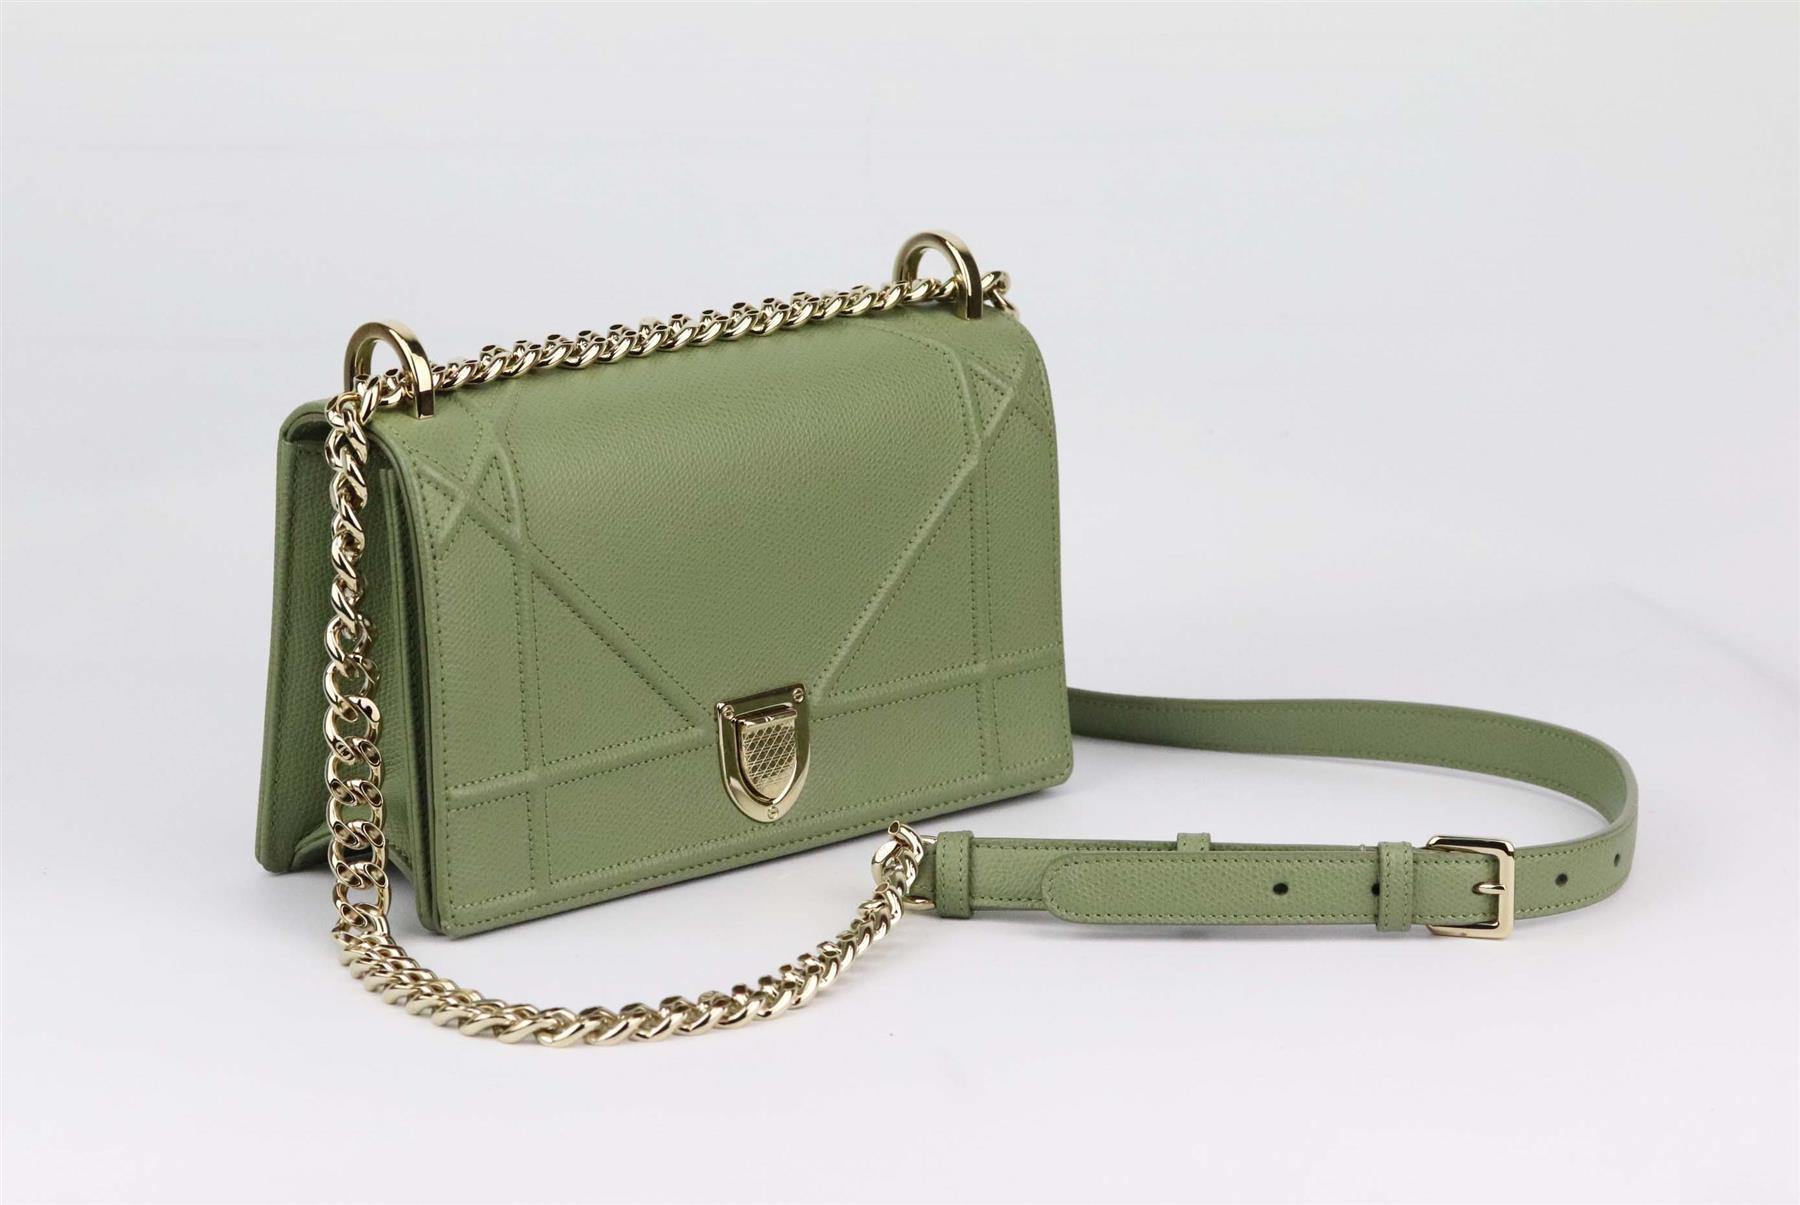 Christian Dior interpretiert sein ikonisches Cannage-Design neu als khakifarbene Diorama Flap Bag - eine der beliebtesten Silhouetten - in der charakteristischen Ledertechnik. Das khakifarbene Kalbsleder hat eine strukturierte Form und wird mit